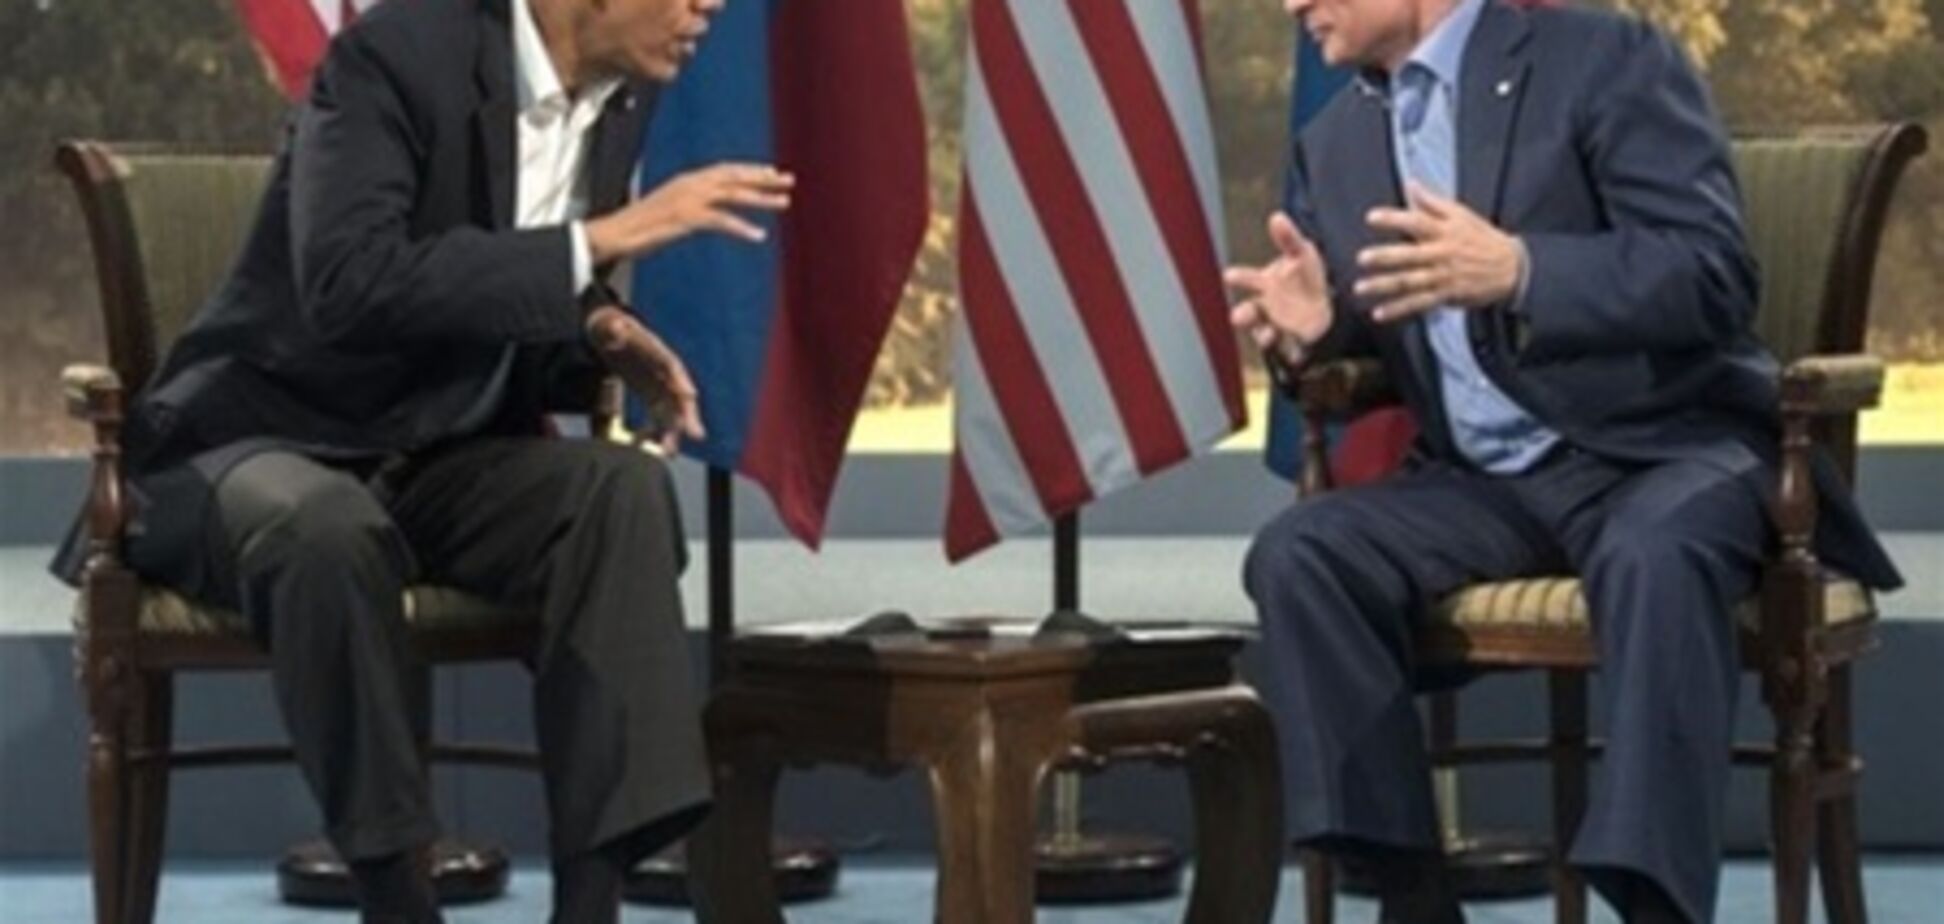 Переговоры Путина и Обамы по Сирии прошли в 'ледяных тонах' - СМИ